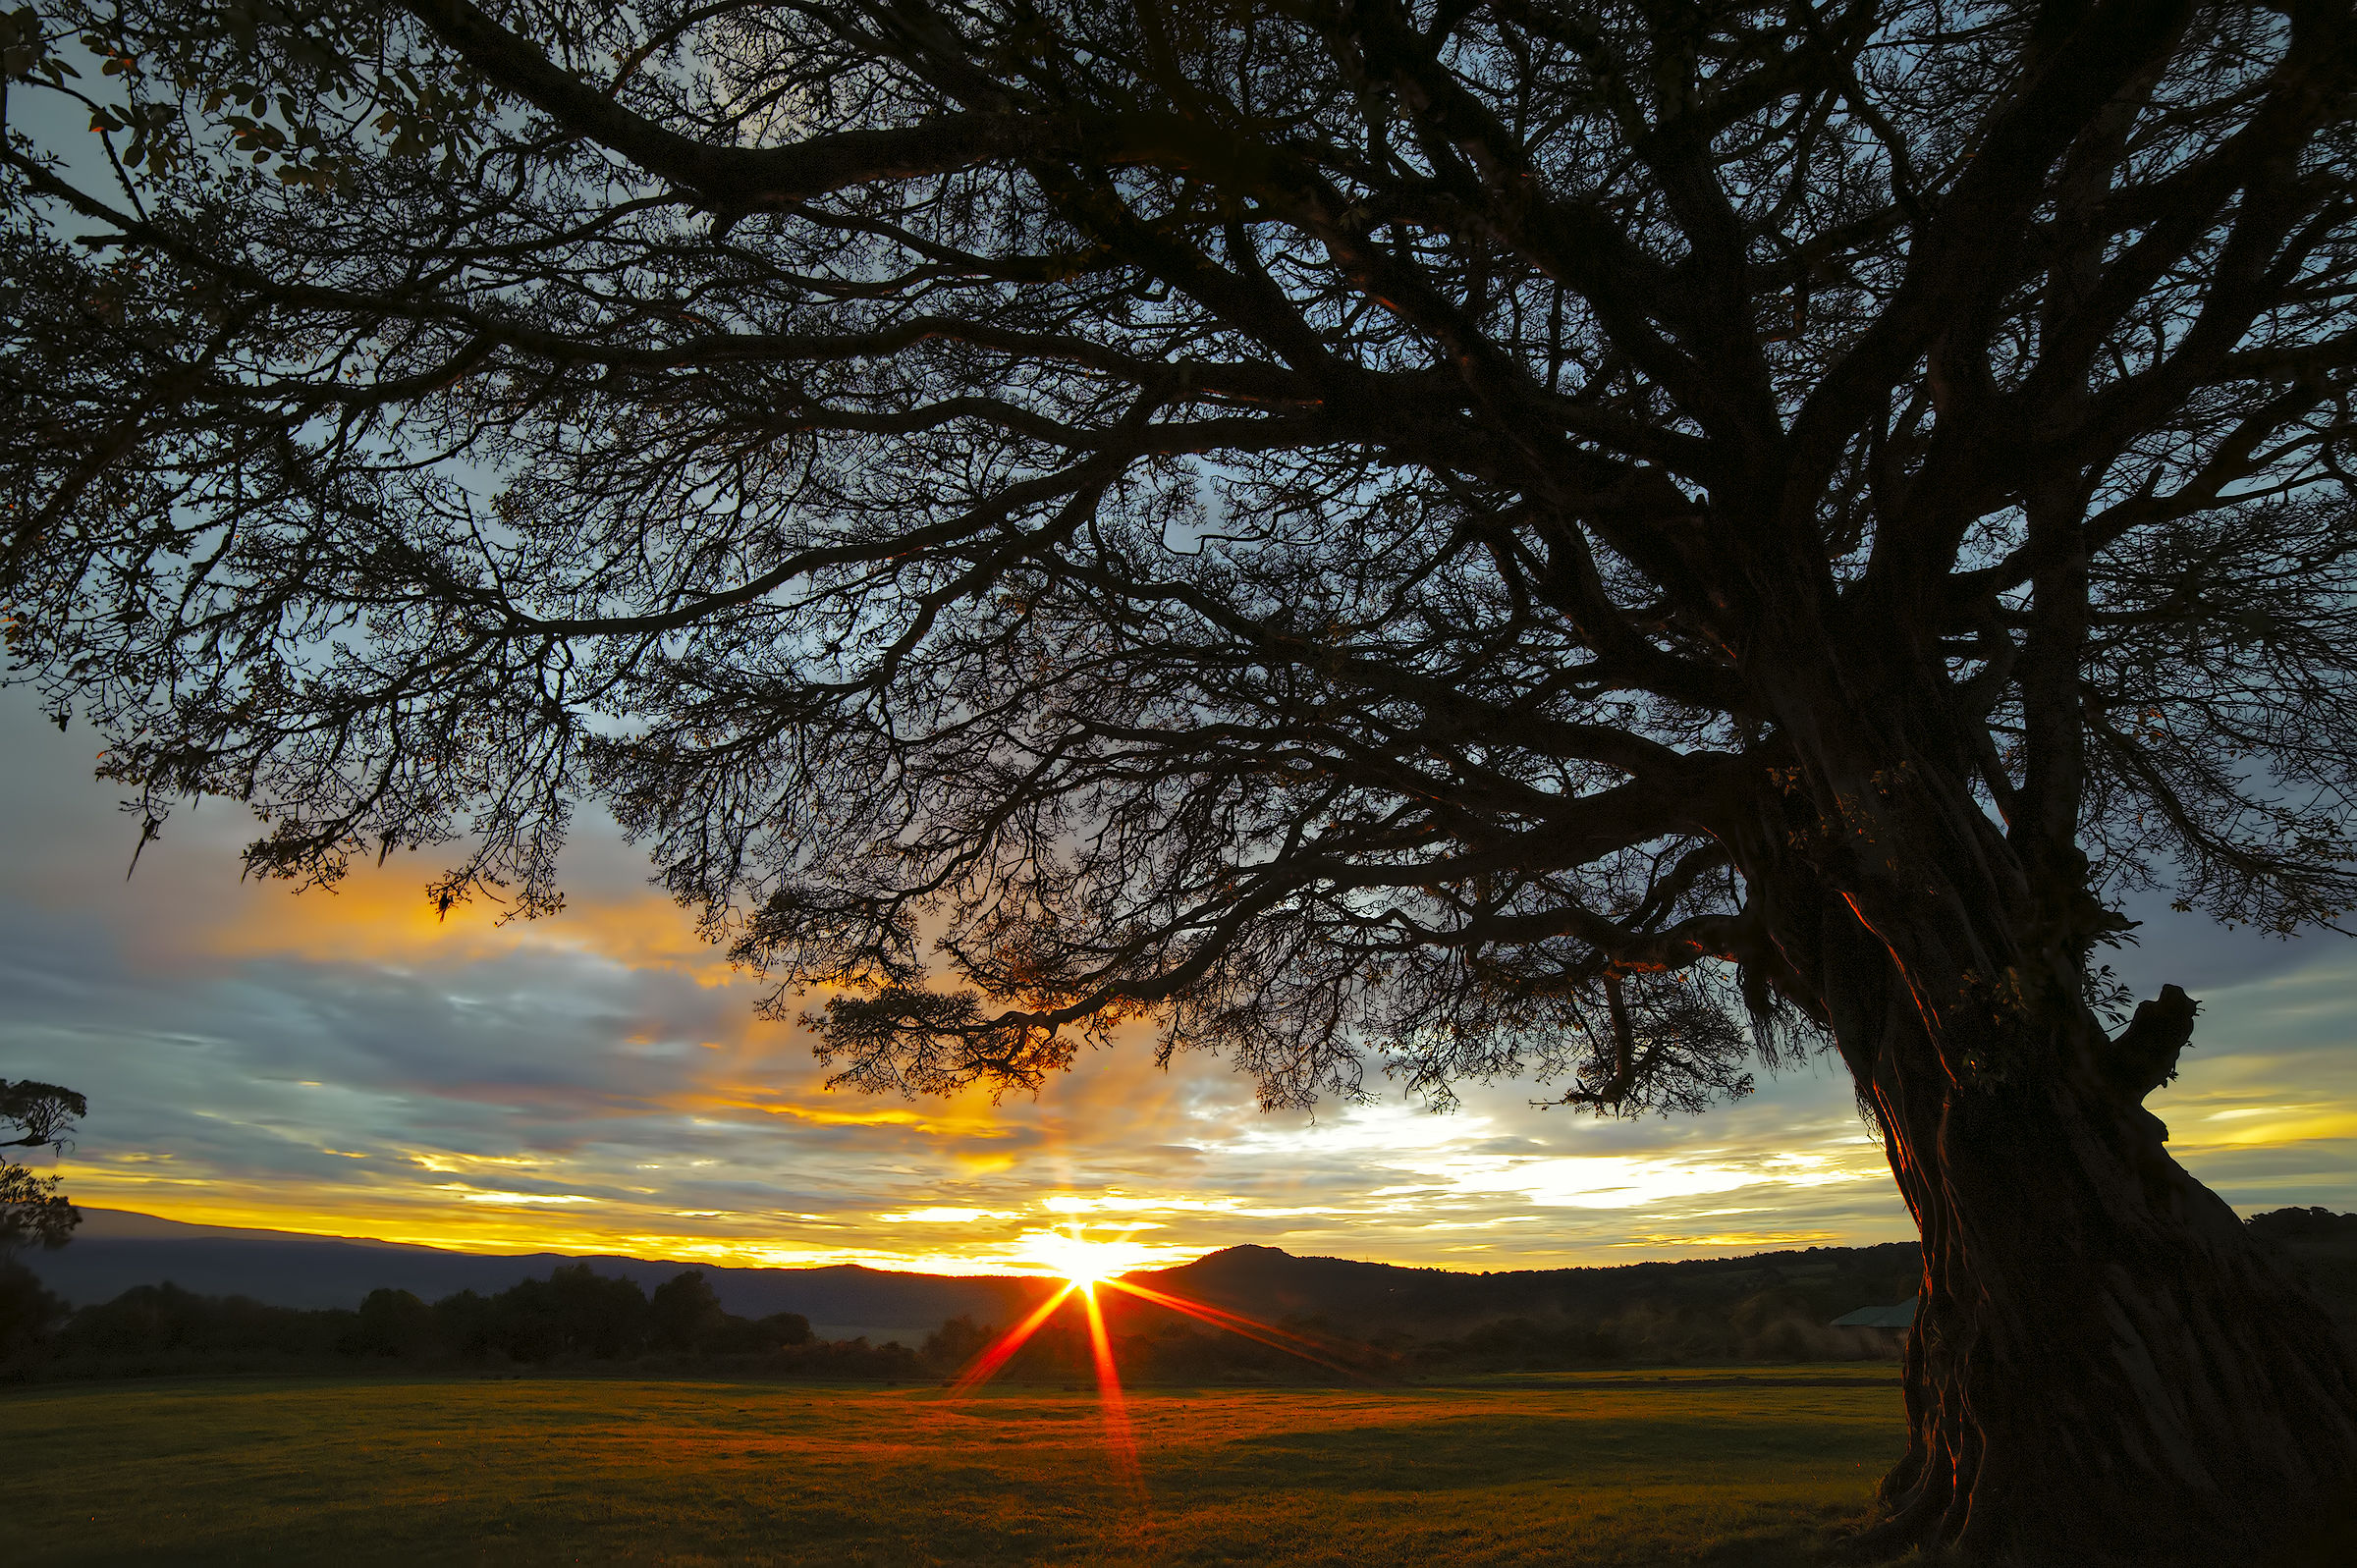 Ngorongoro sunrise...